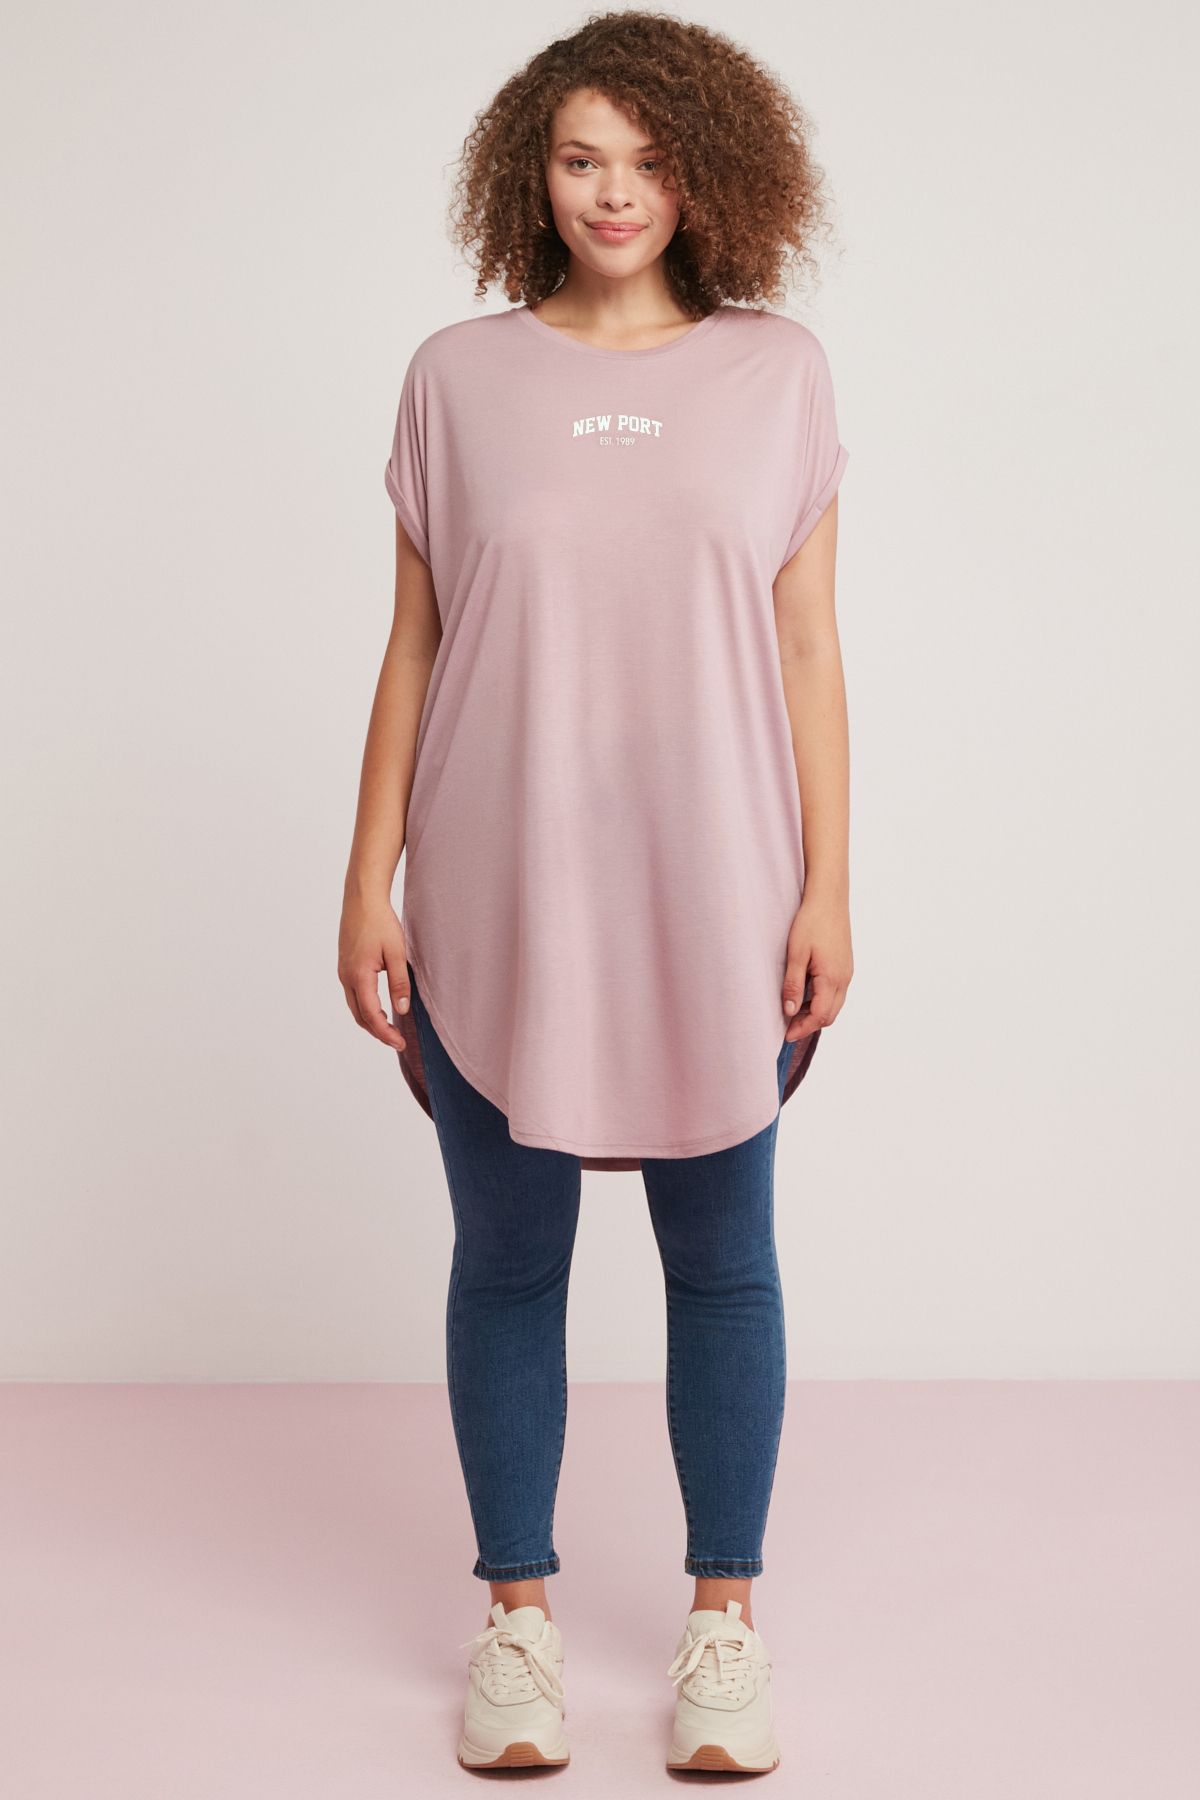 ETHIQUET Dıana Kadın Oversize Önü Baskılı Uzun Yuvarlak Yaka Pembe Büyük Beden T-shirt